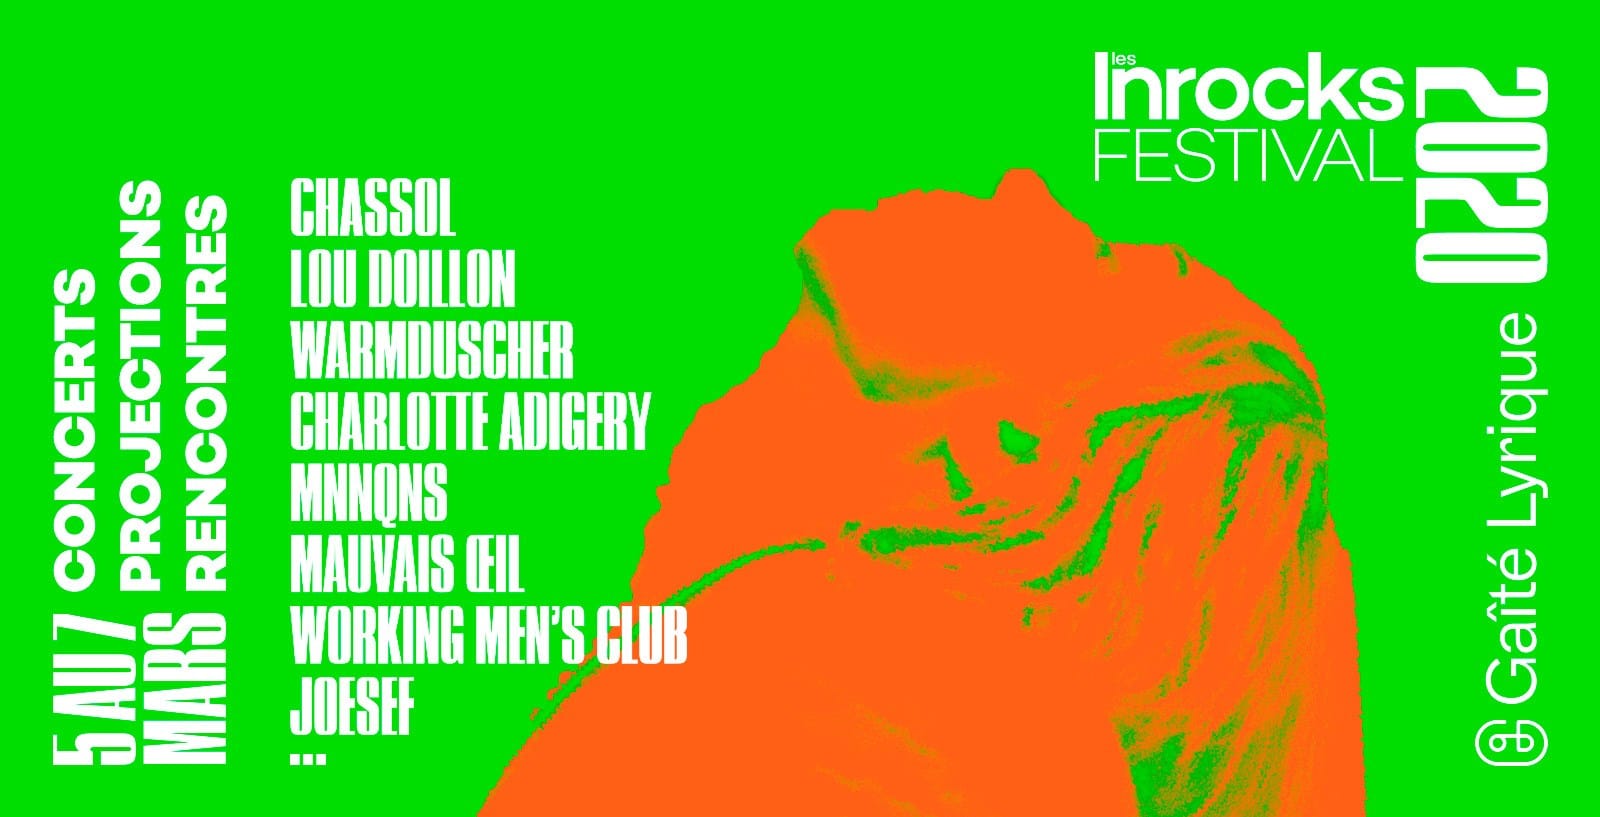 Les Inrocks Festival 2020 affiche festival concerts, projections et rencontres